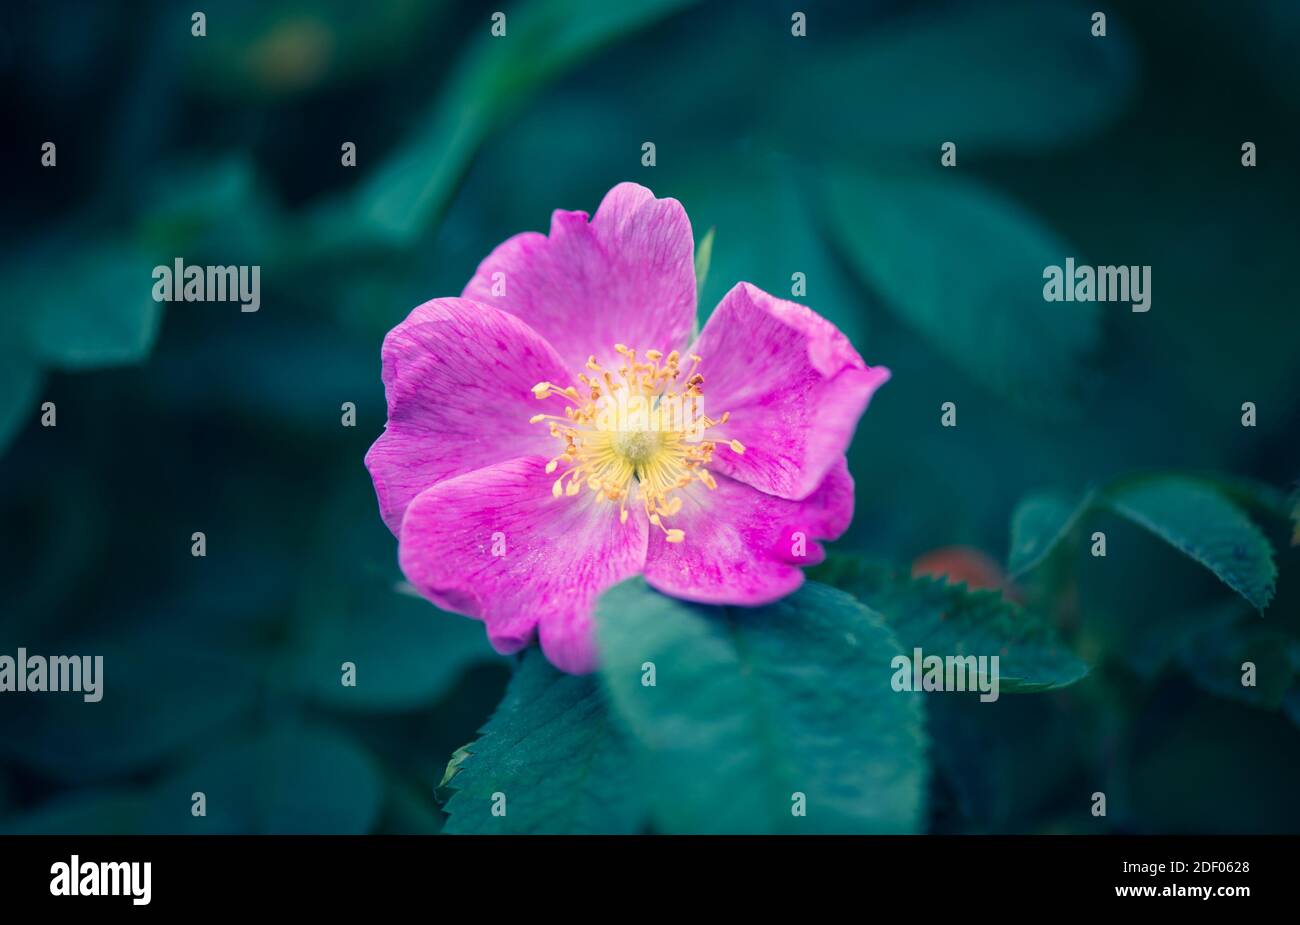 Flor rosada destaca sobre un fondo verde oscuro de verdor. La belleza en la naturaleza. Foto de stock